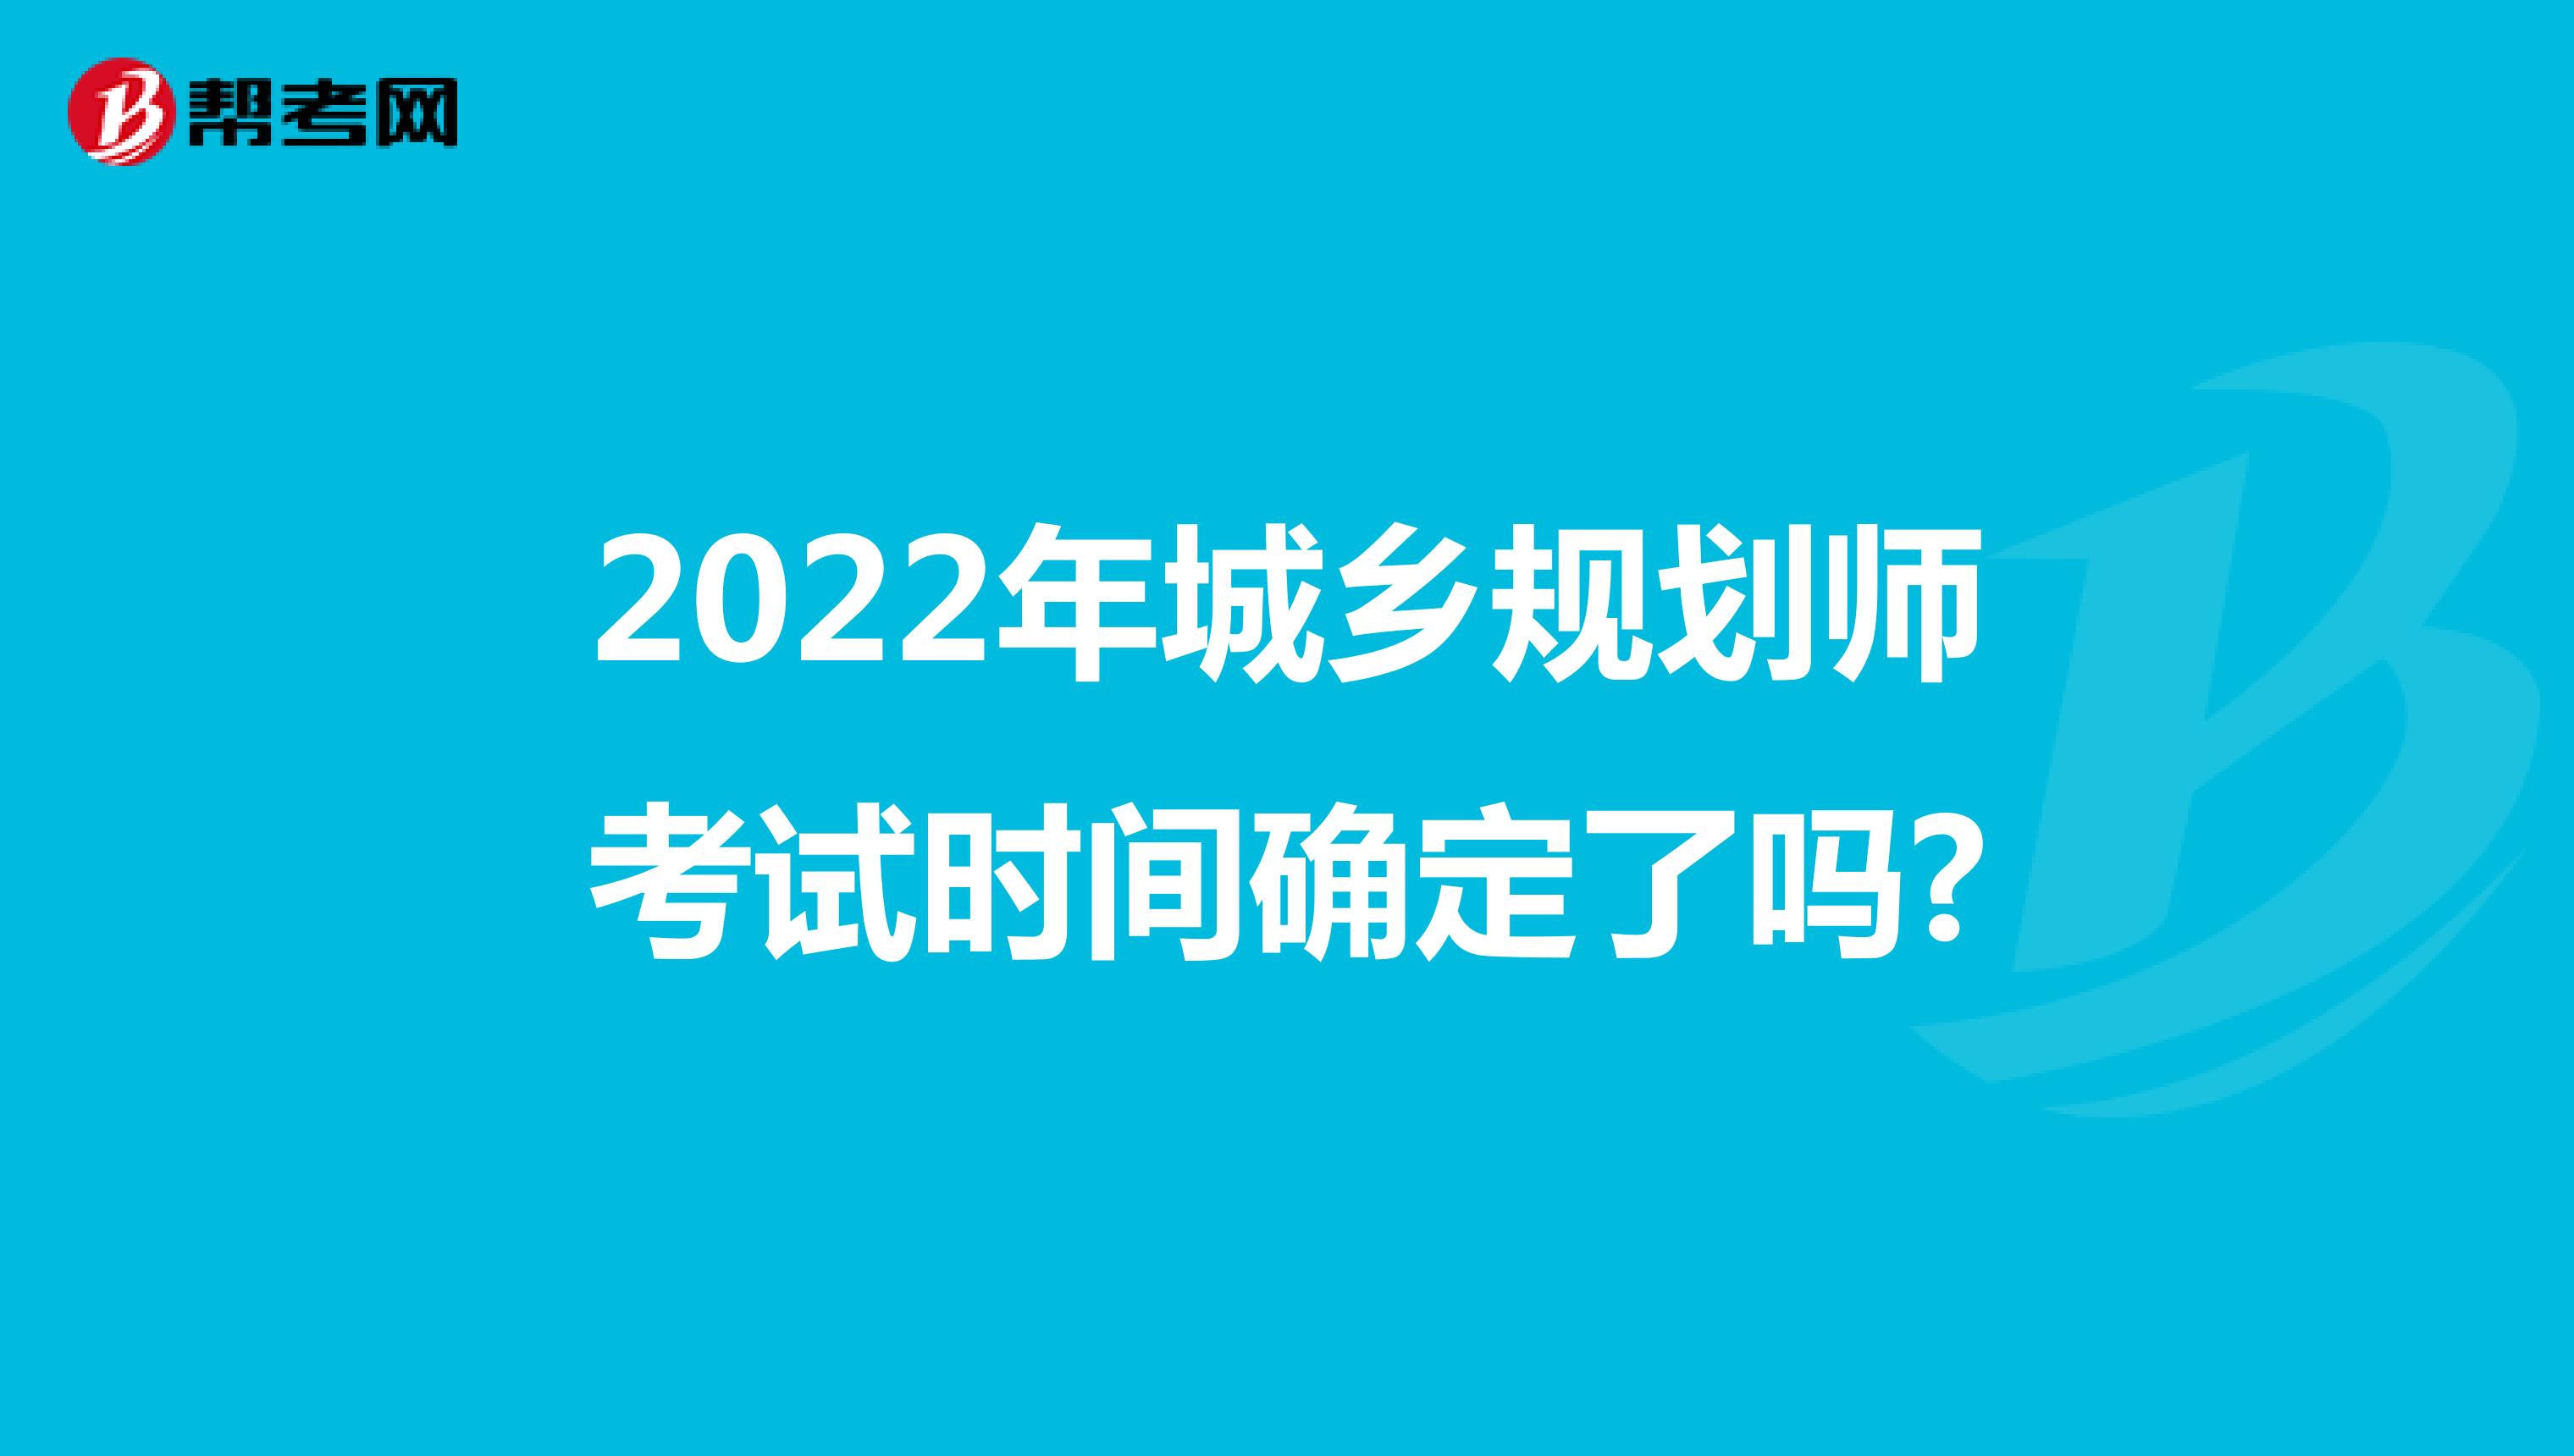 2022年城乡规划师考试时间确定了吗?